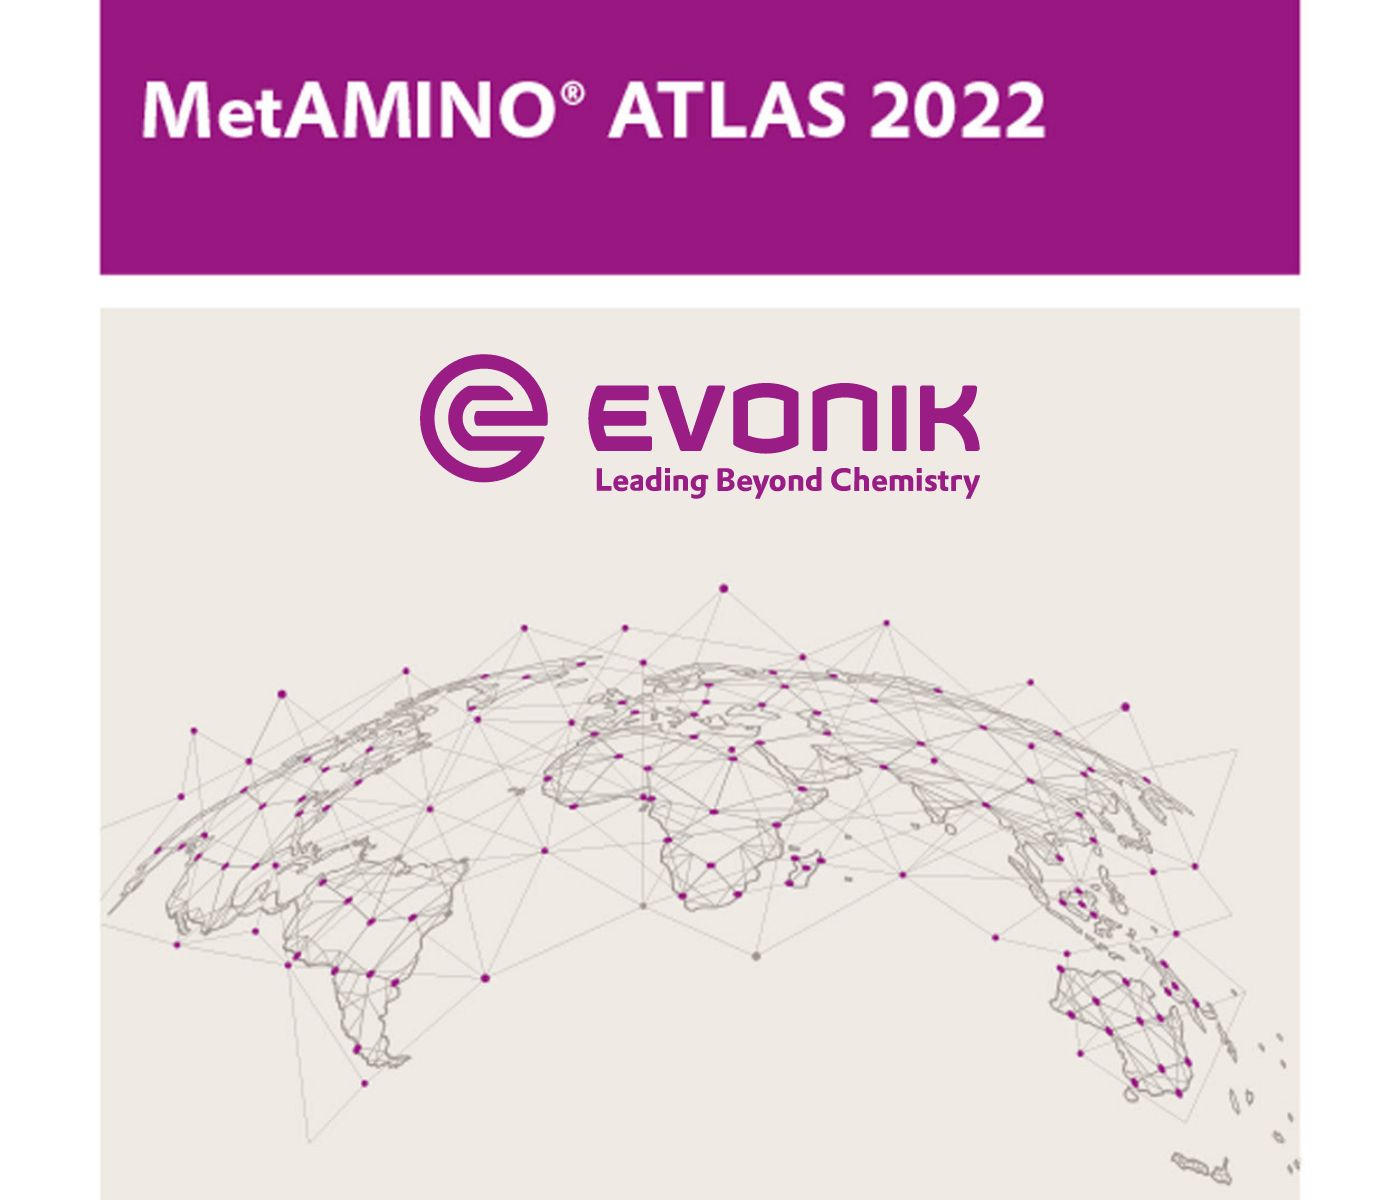 Evonik publica a primeira edição do MetAMINO® ATLAS